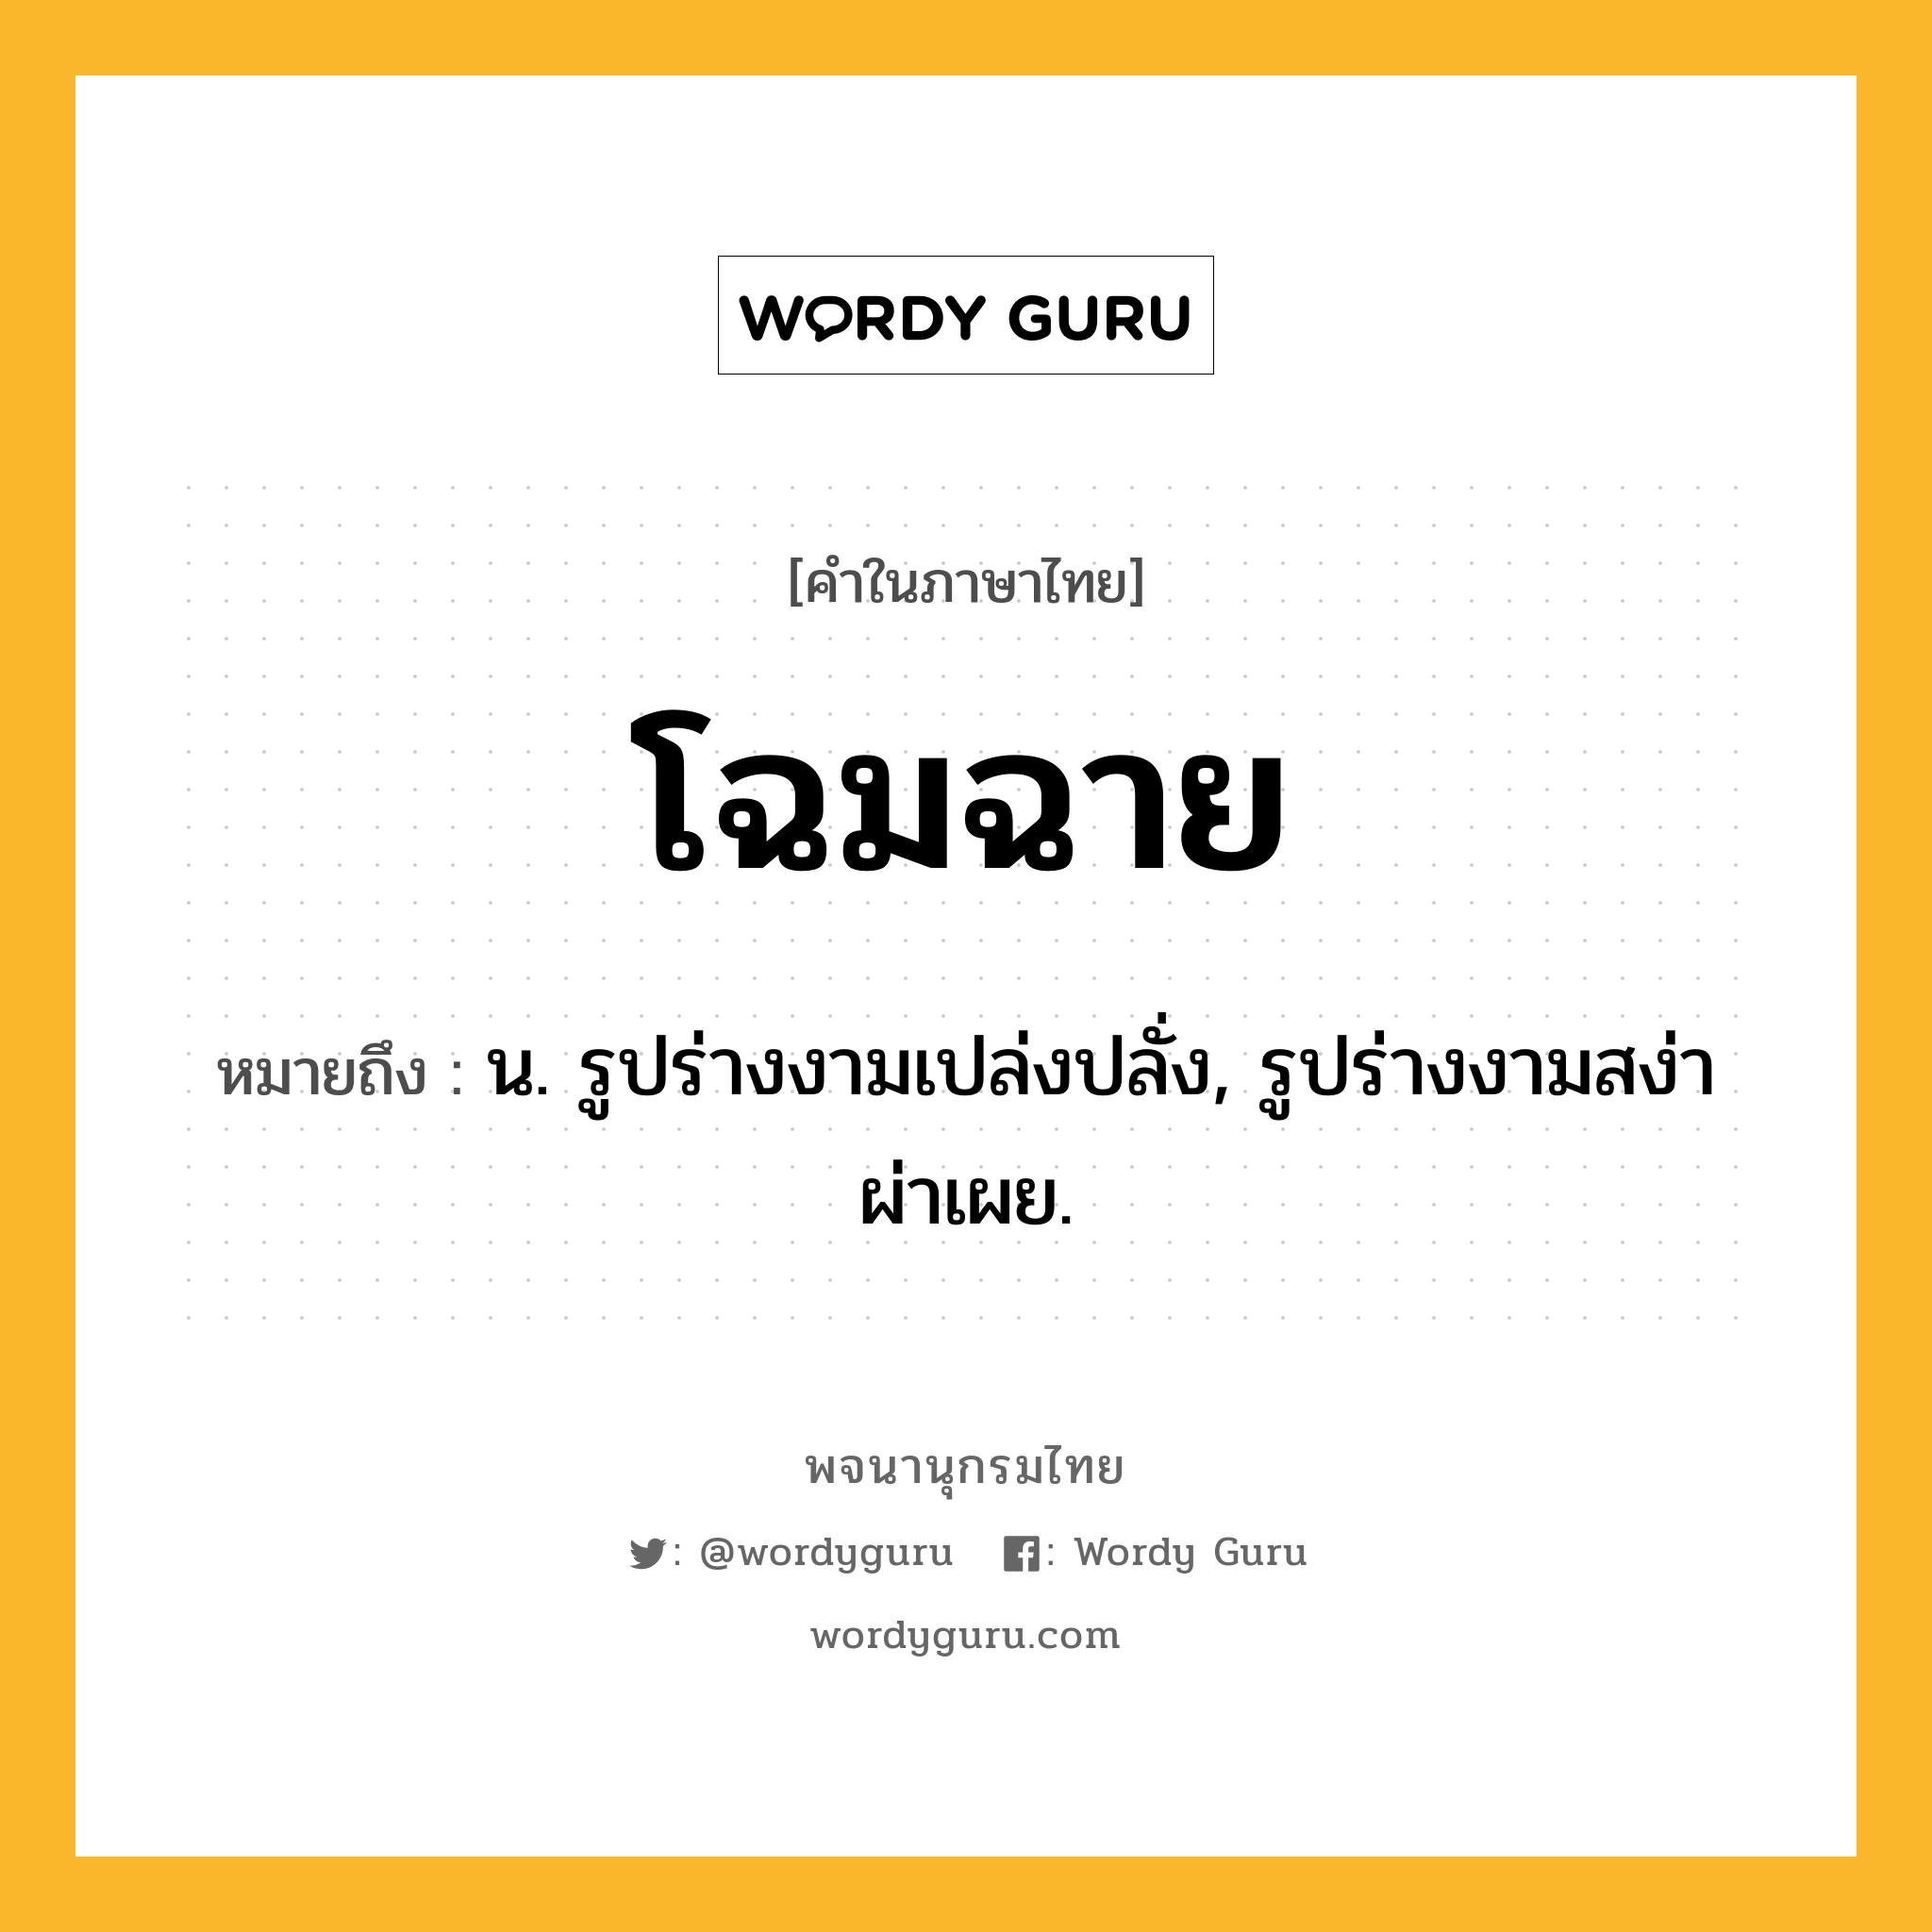 โฉมฉาย ความหมาย หมายถึงอะไร?, คำในภาษาไทย โฉมฉาย หมายถึง น. รูปร่างงามเปล่งปลั่ง, รูปร่างงามสง่าผ่าเผย.